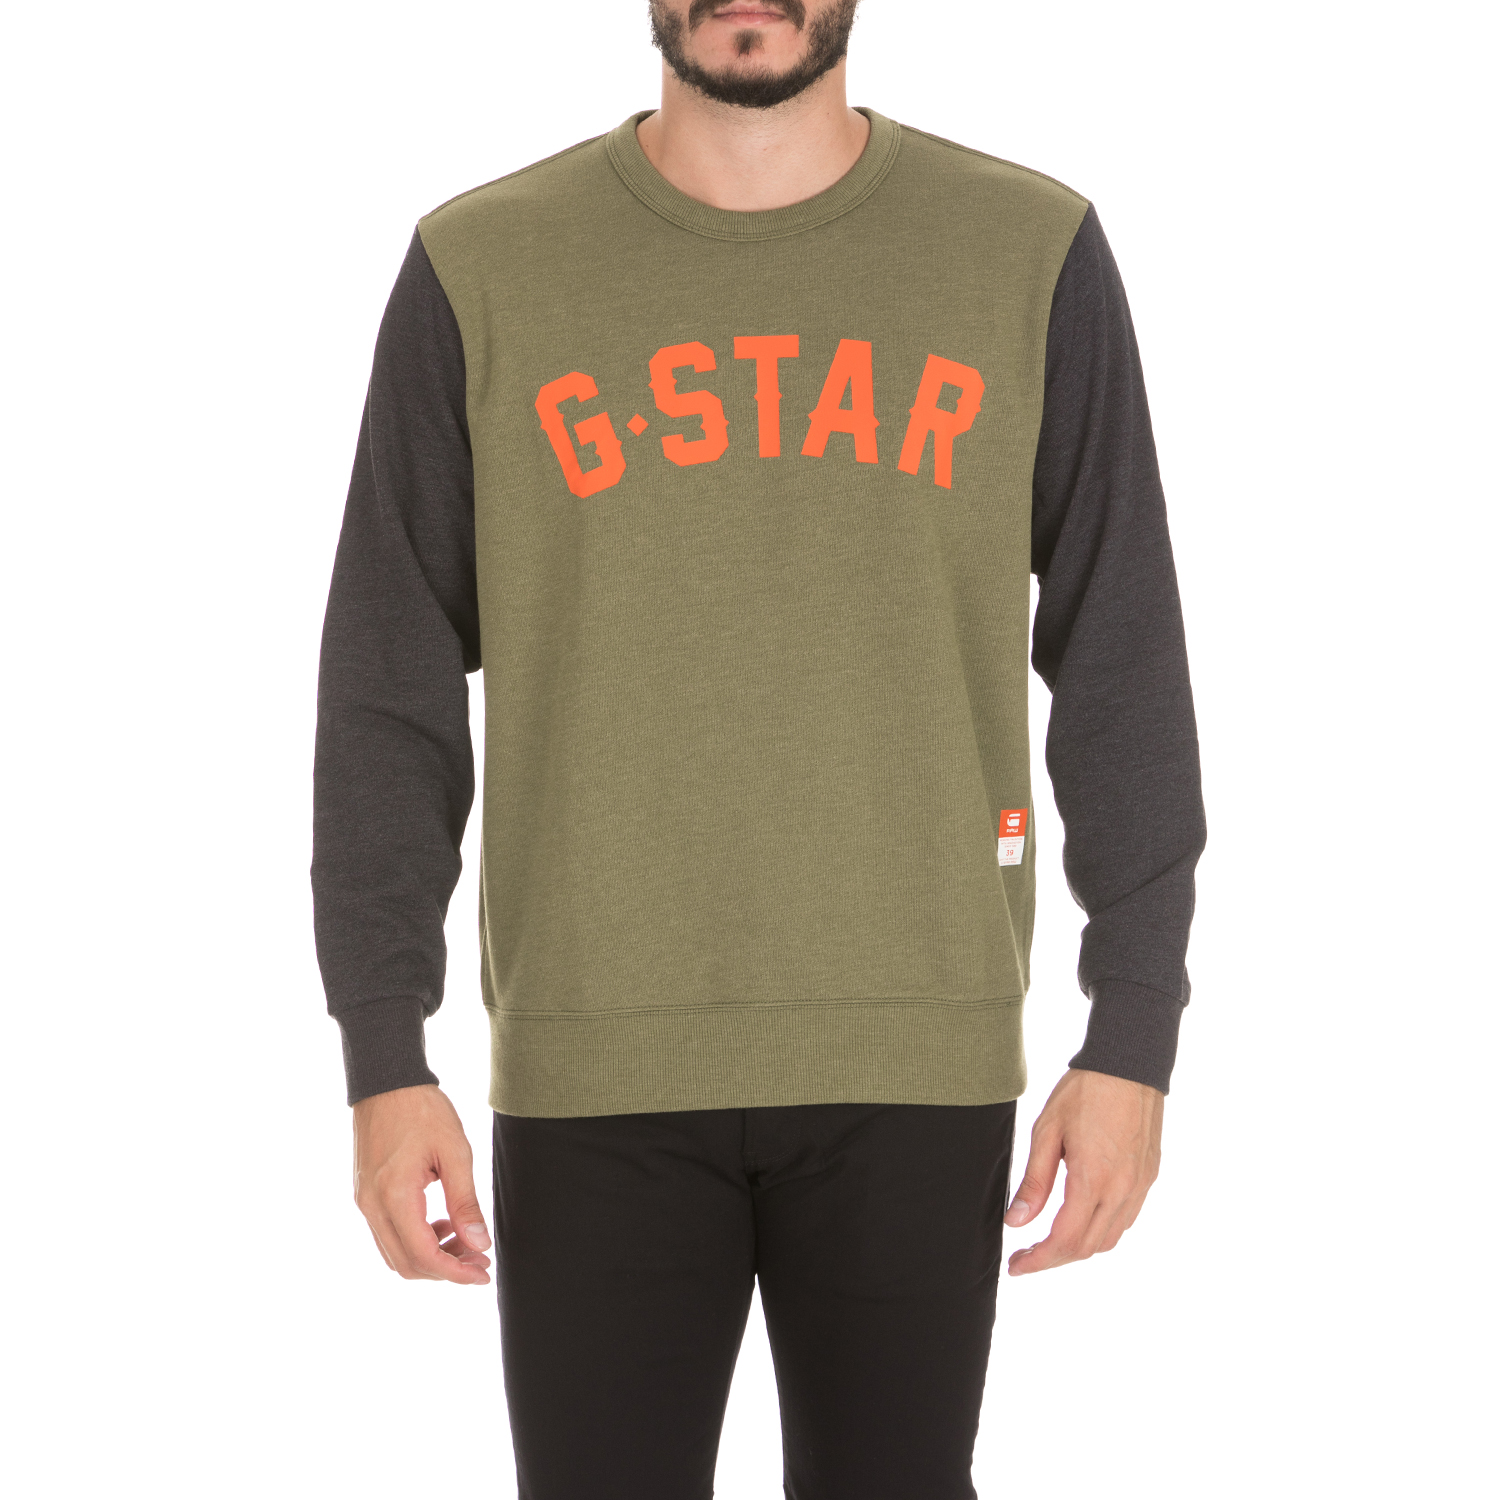 Ανδρικά/Ρούχα/Φούτερ/Μπλούζες G-STAR RAW - Ανδρική φούτερ μπλούζα HALGEN CORE G-STAR RAW πράσινη